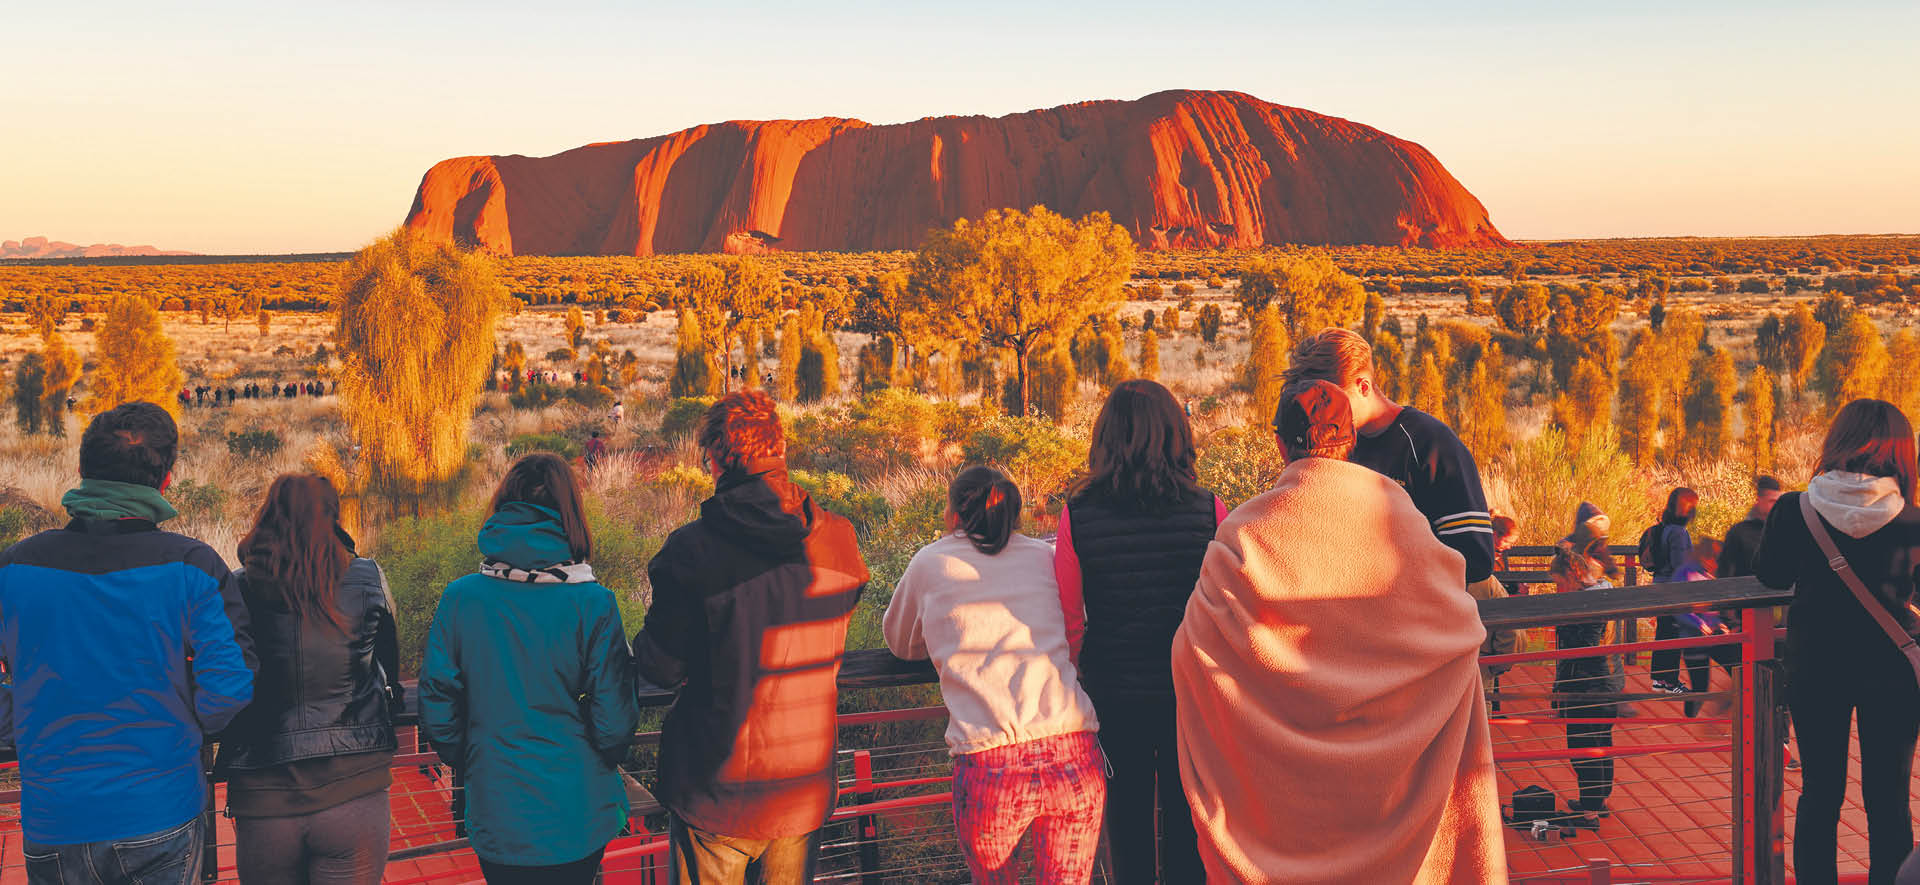 Turyści już nie wchodzą na Uluru święte miejsce Aborygenów